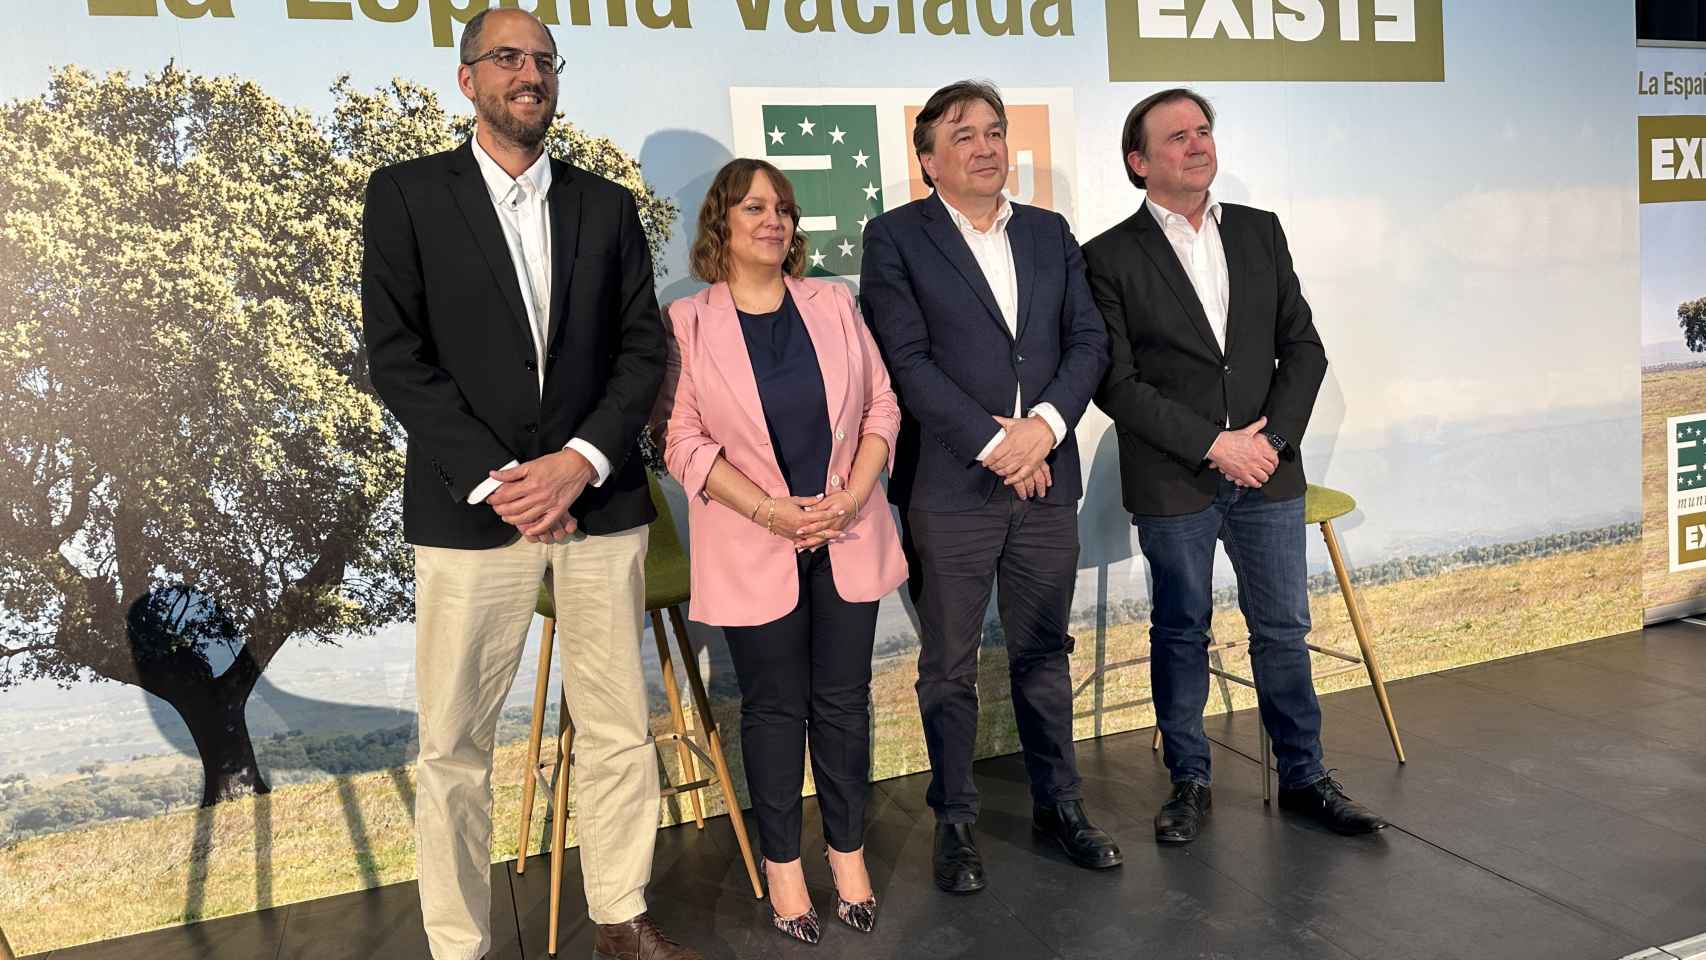 Presentación de la candidatura de Existe a las elecciones europeas, con Vanessa García como número 4